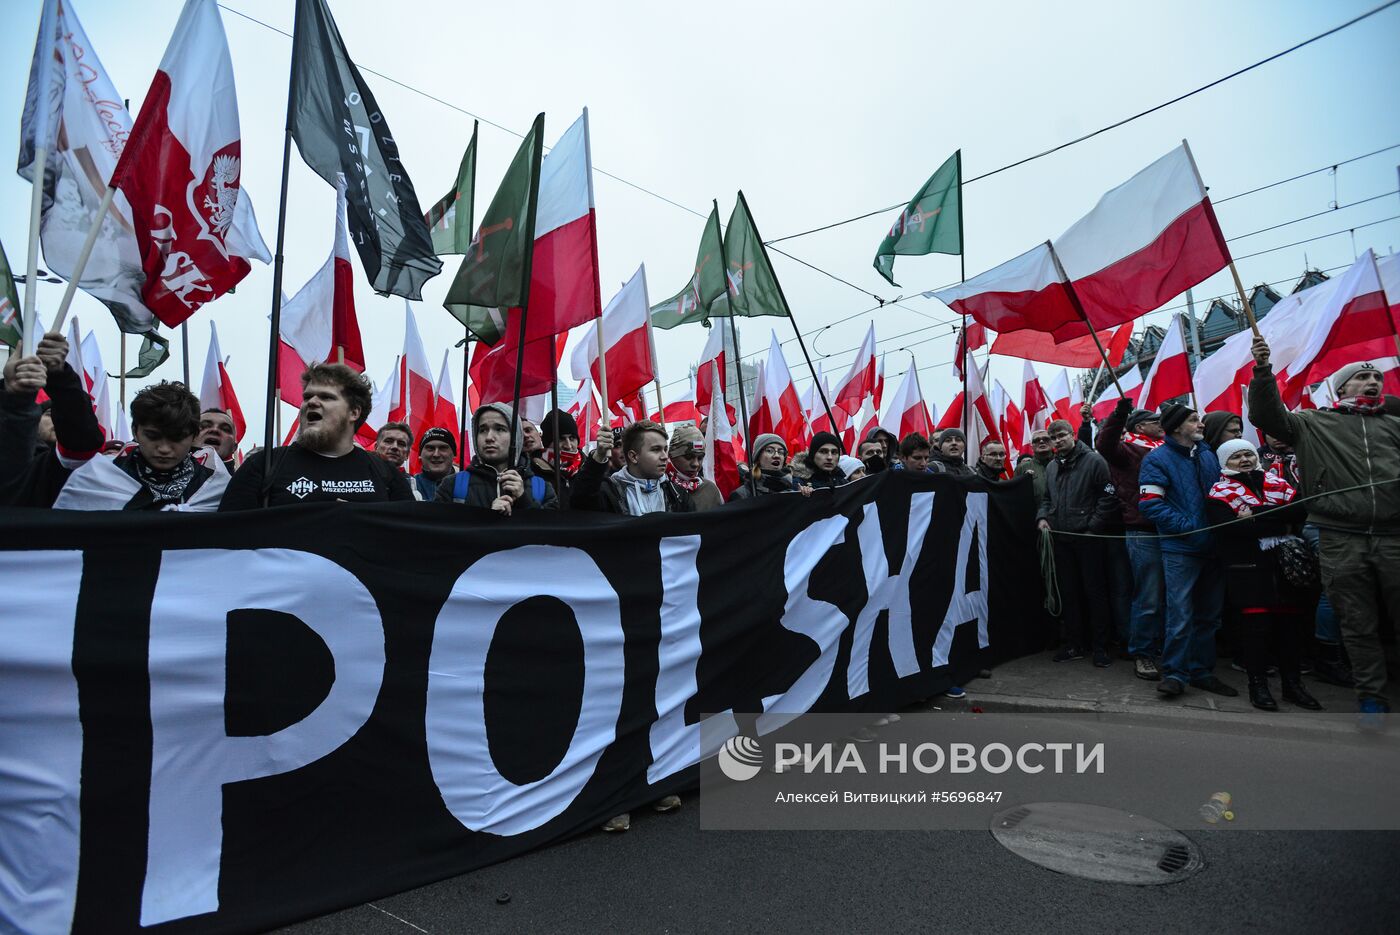 Марш в Варшаве в честь 100-летия независимости Польши